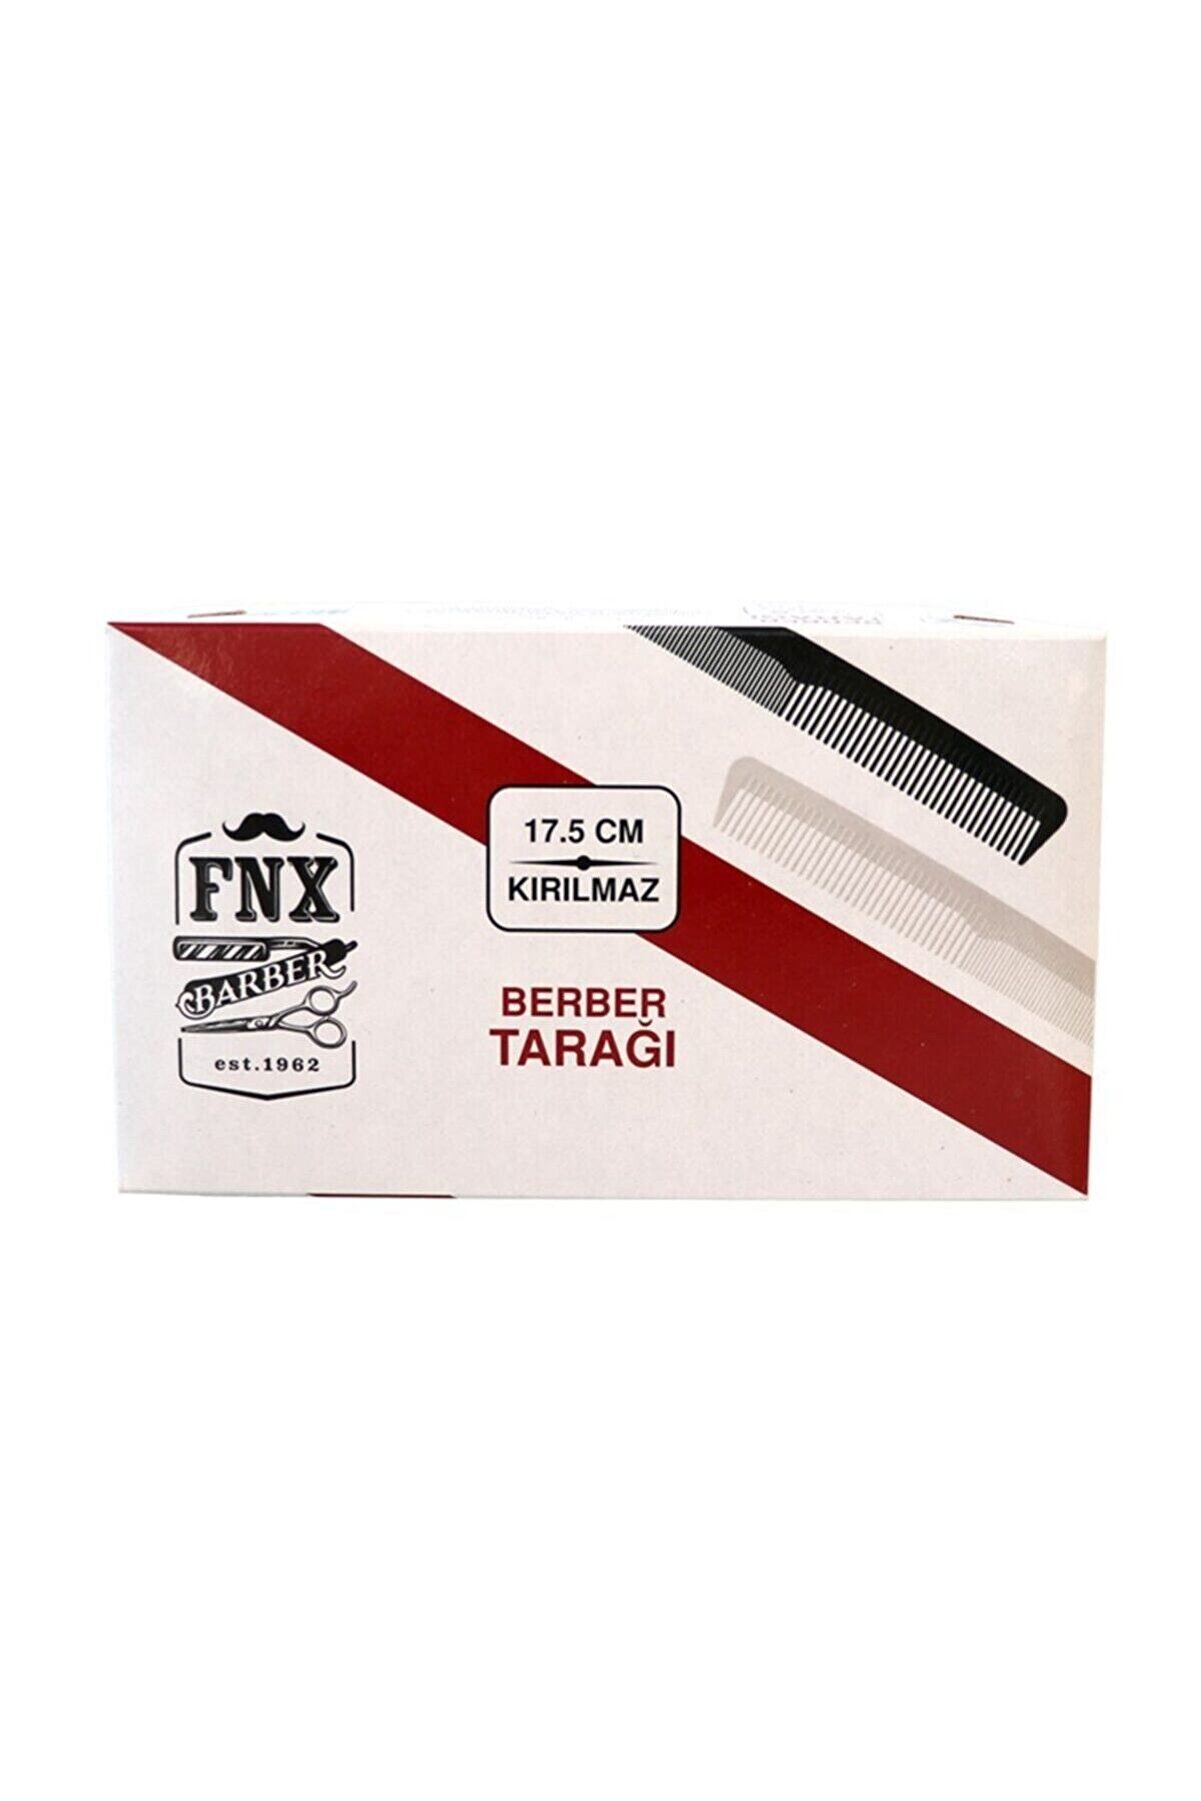 Fonex Fnx 17,5 Cm Kırılmaz Berber Tarağı 6 Adet